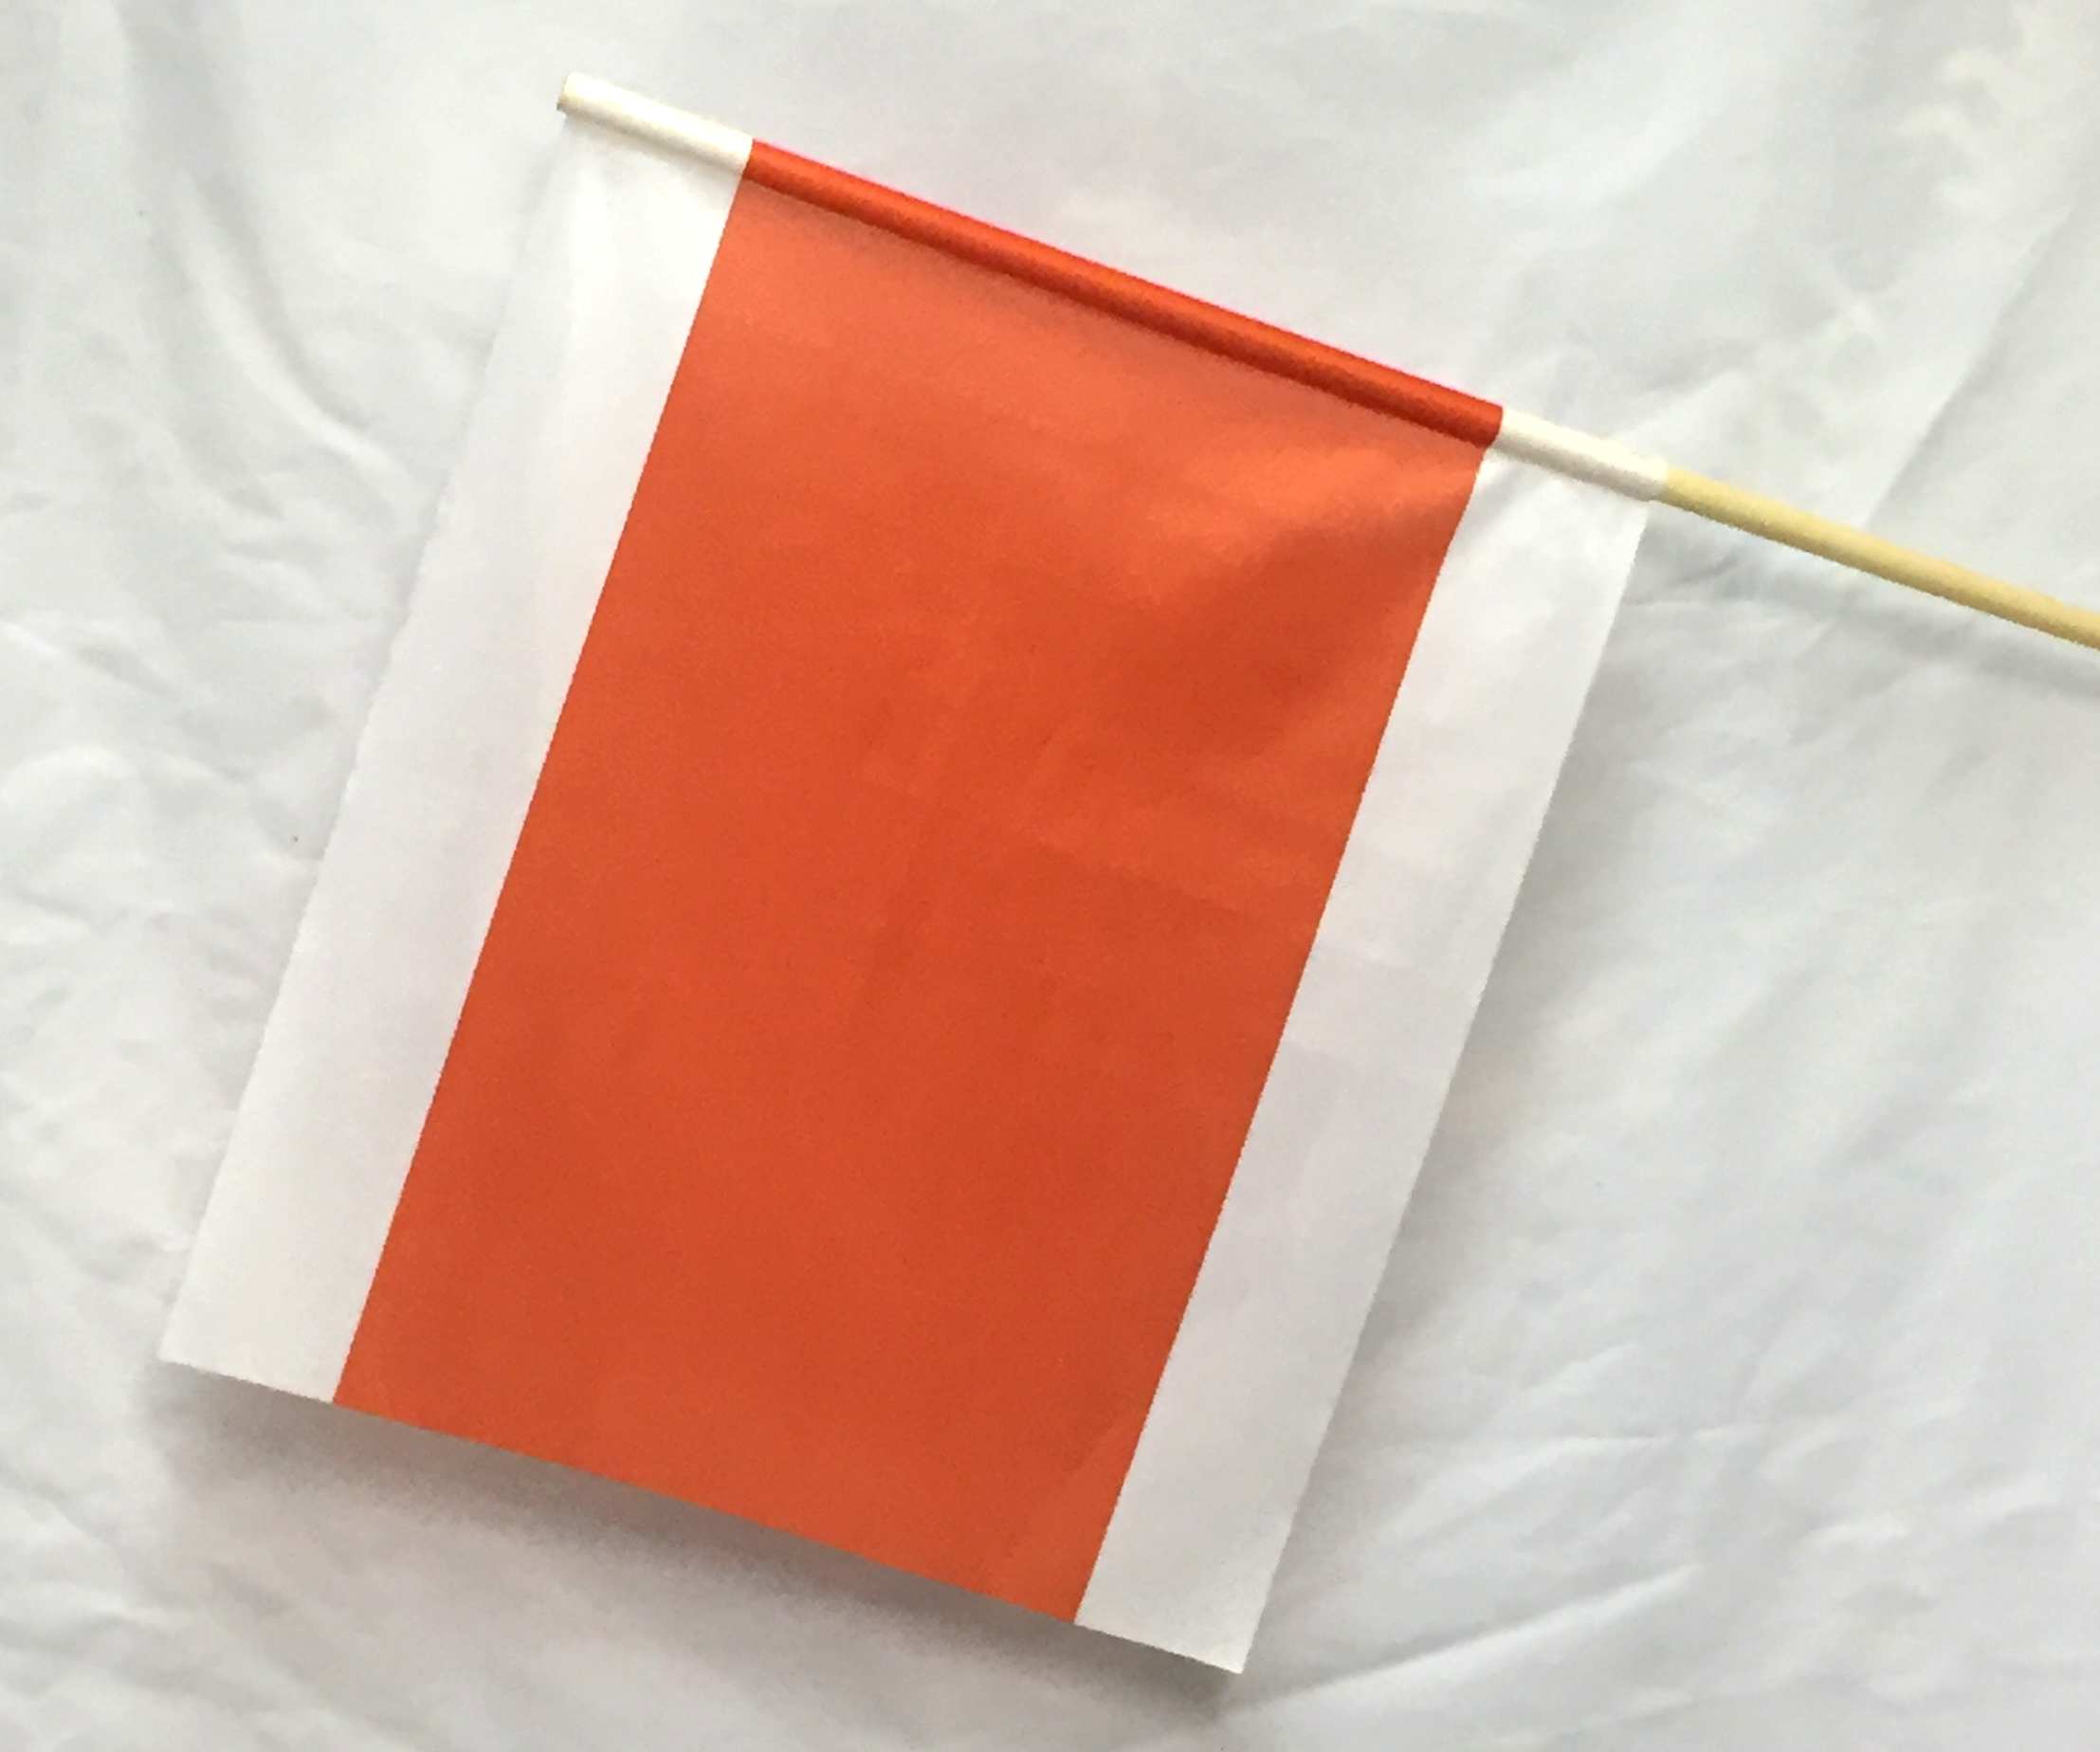 Warnflagge Warnfahne Warnsignal Signalfahne orange / weiß Stoff mit  Holzstab 50 x 50 cm. Der Durchmesser des Stabs beträgt 2 cm. : :  Auto & Motorrad